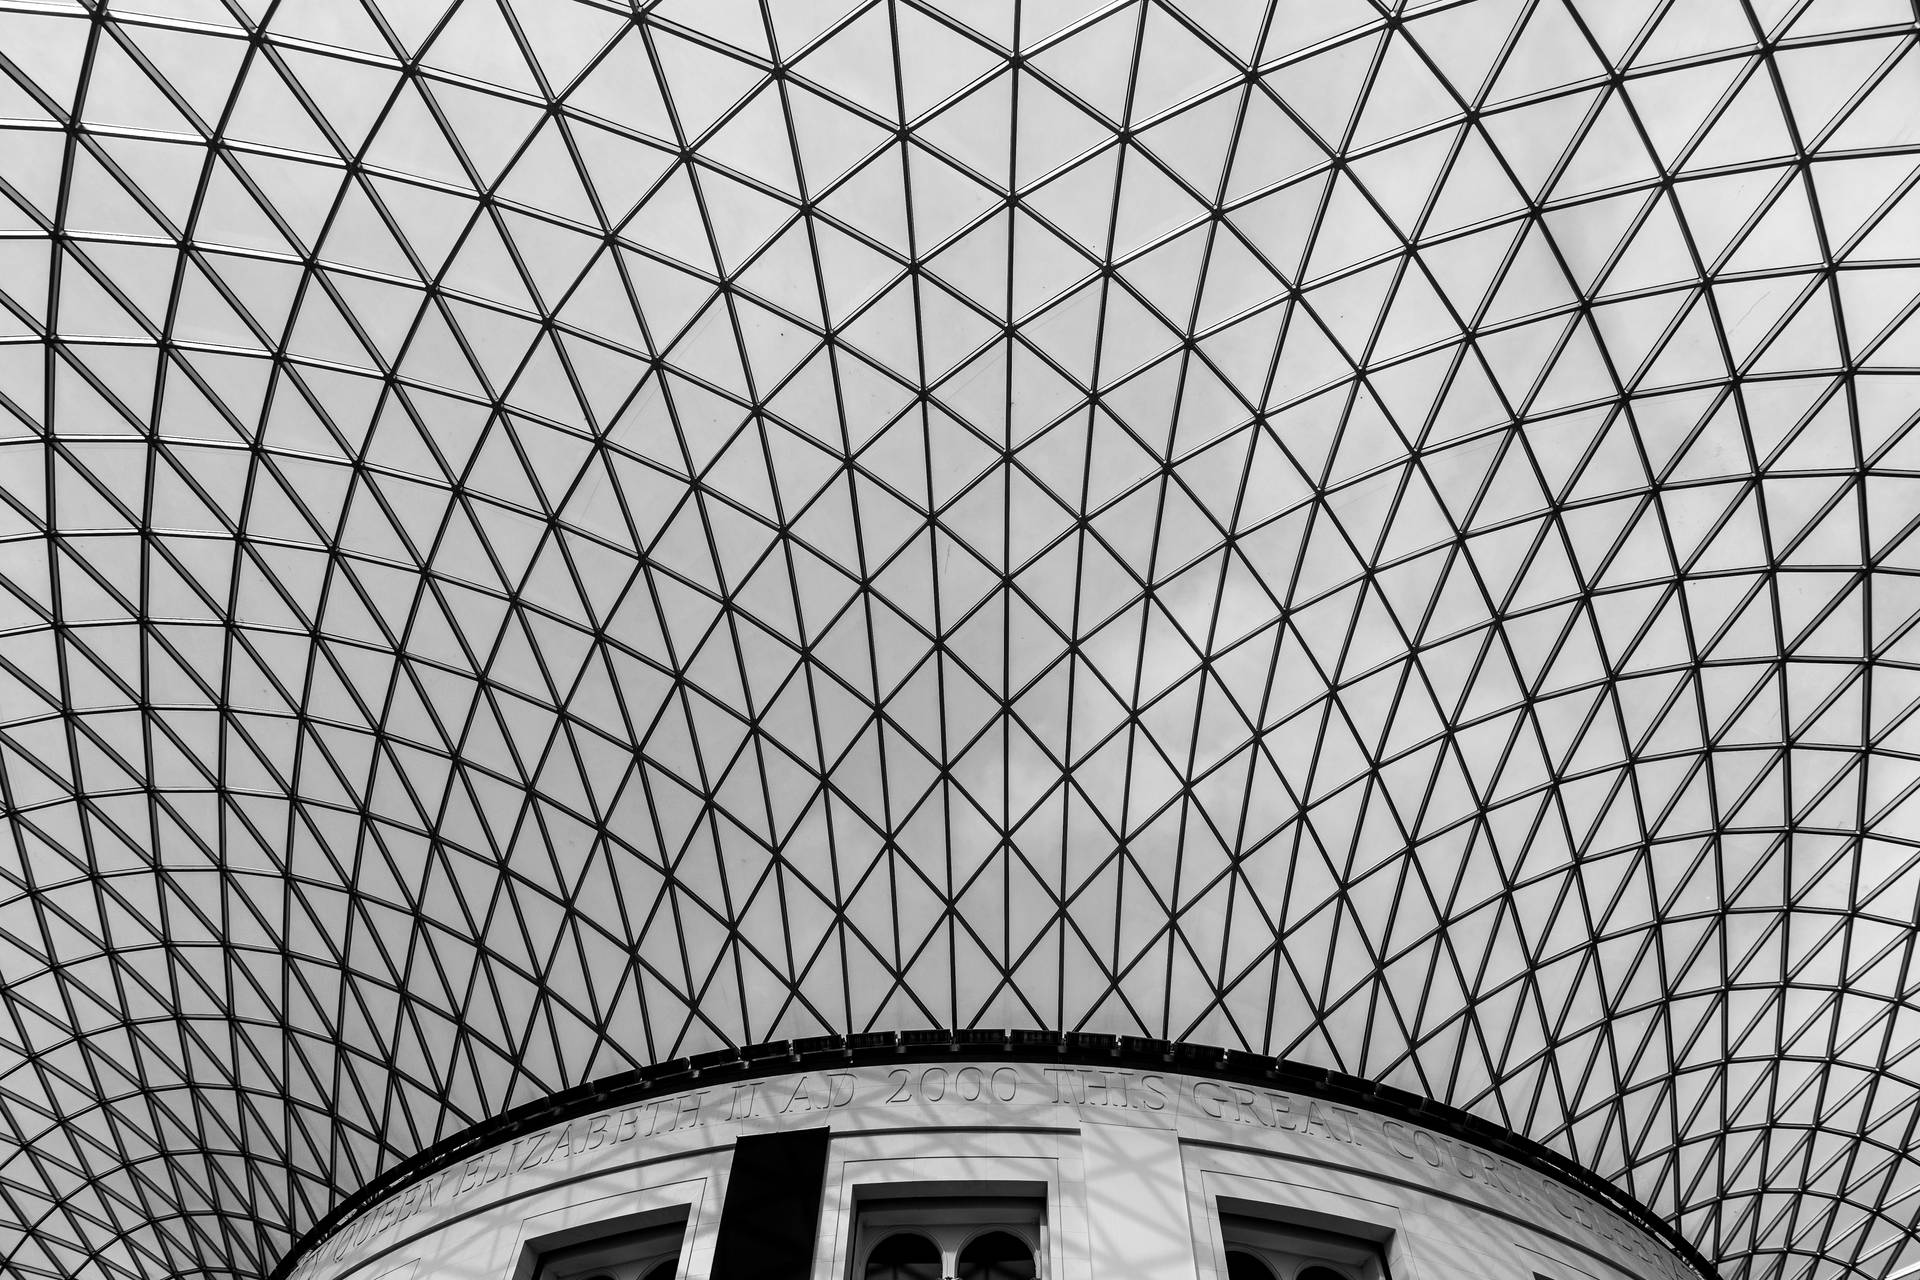 The British Museum Ceiling